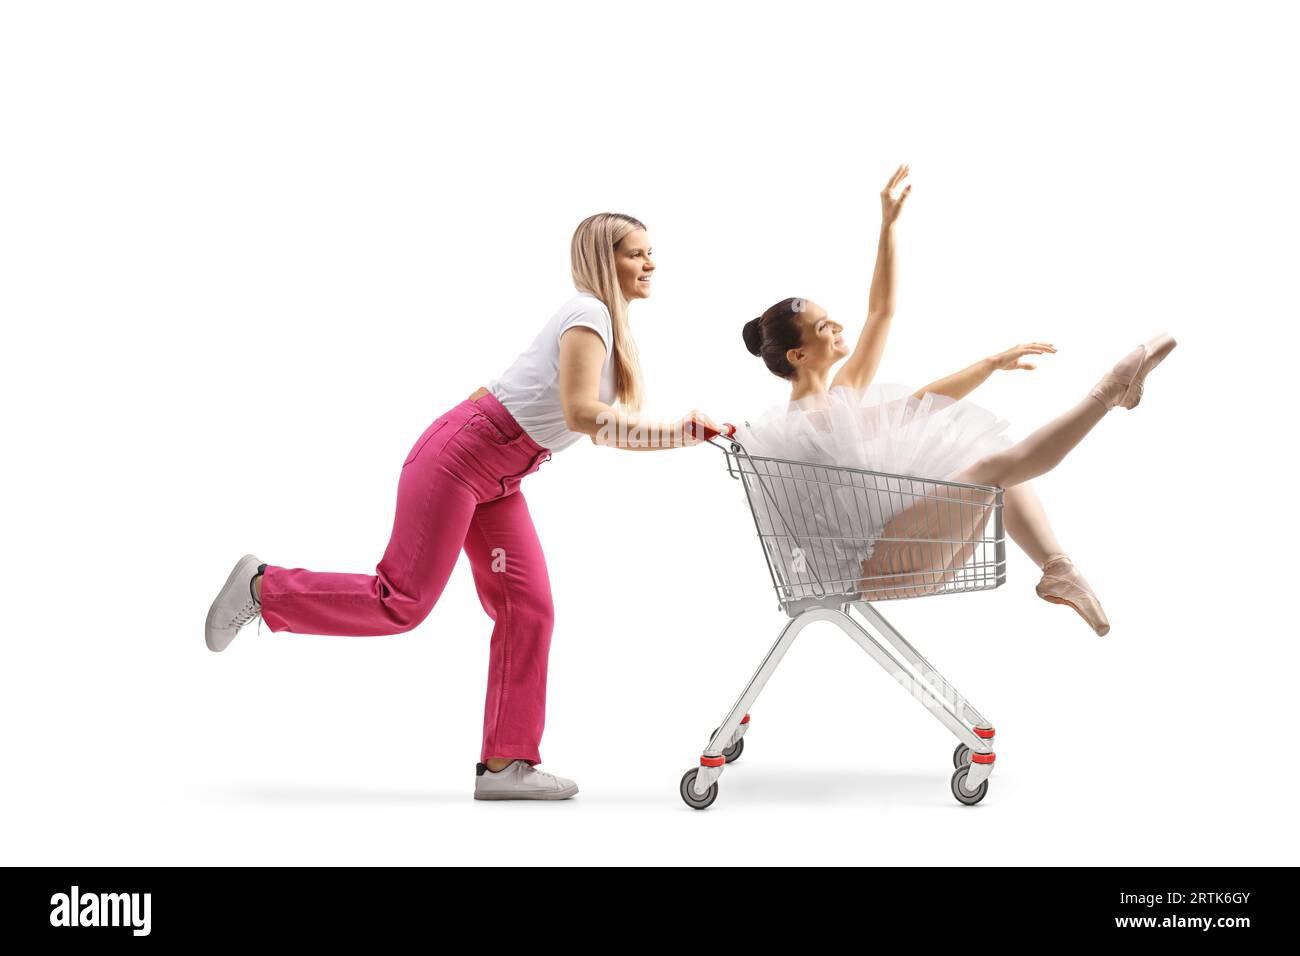 Junge Frau läuft und schiebt eine Ballerina in einen Einkaufswagen, isoliert auf weißem Hintergrund Stockfoto